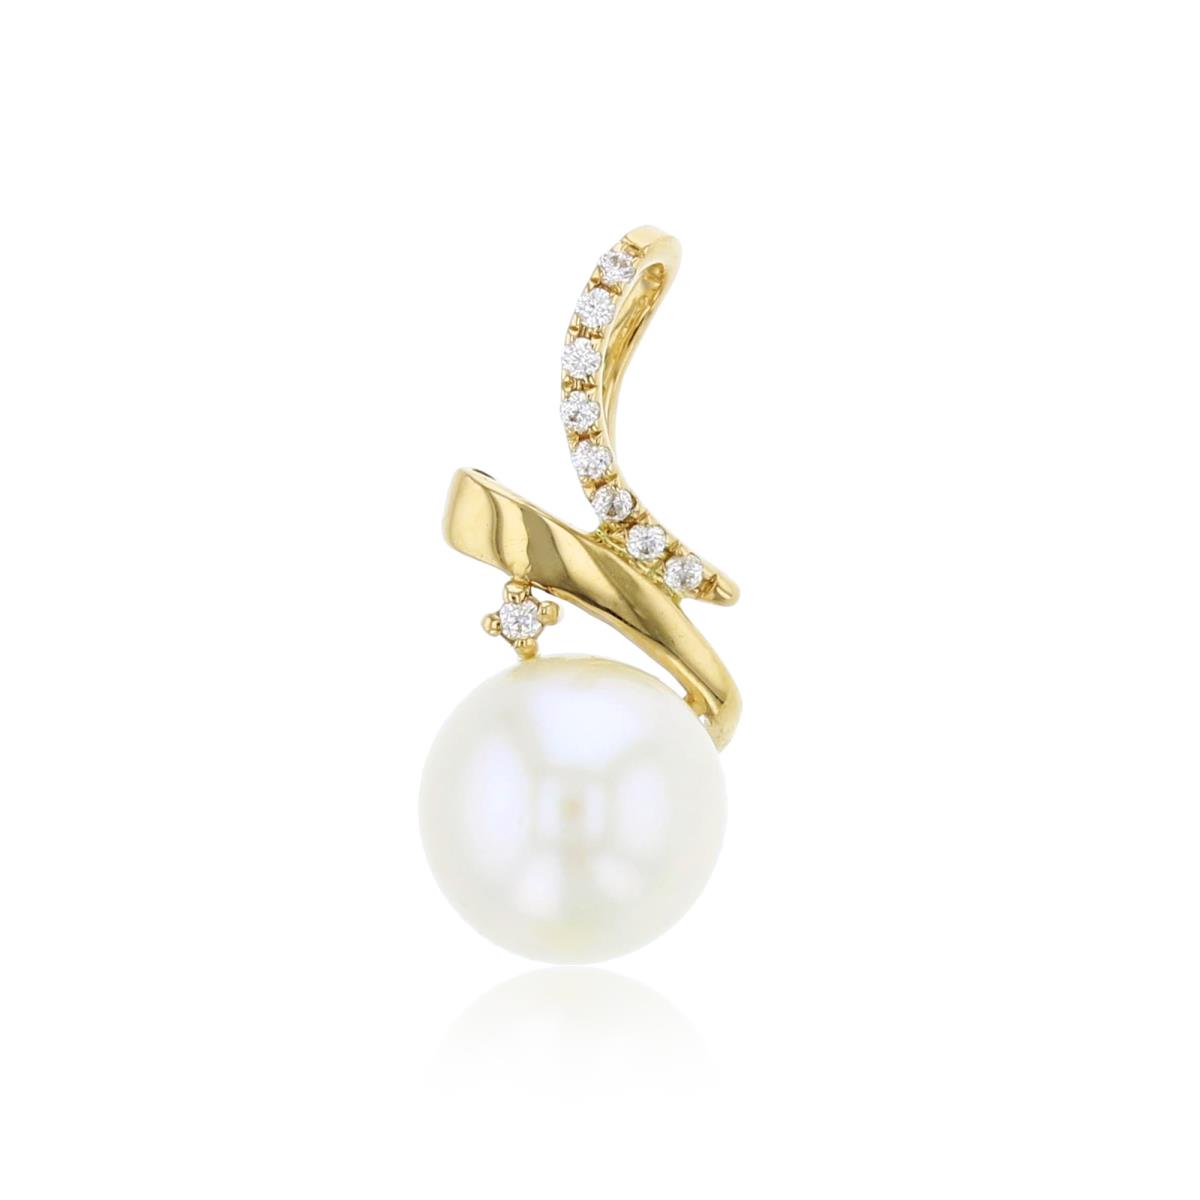 14K Yellow Gold 0.03 CTTW Rnd Diamonds & 7mm Rnd White Pearl Fashion Pendant